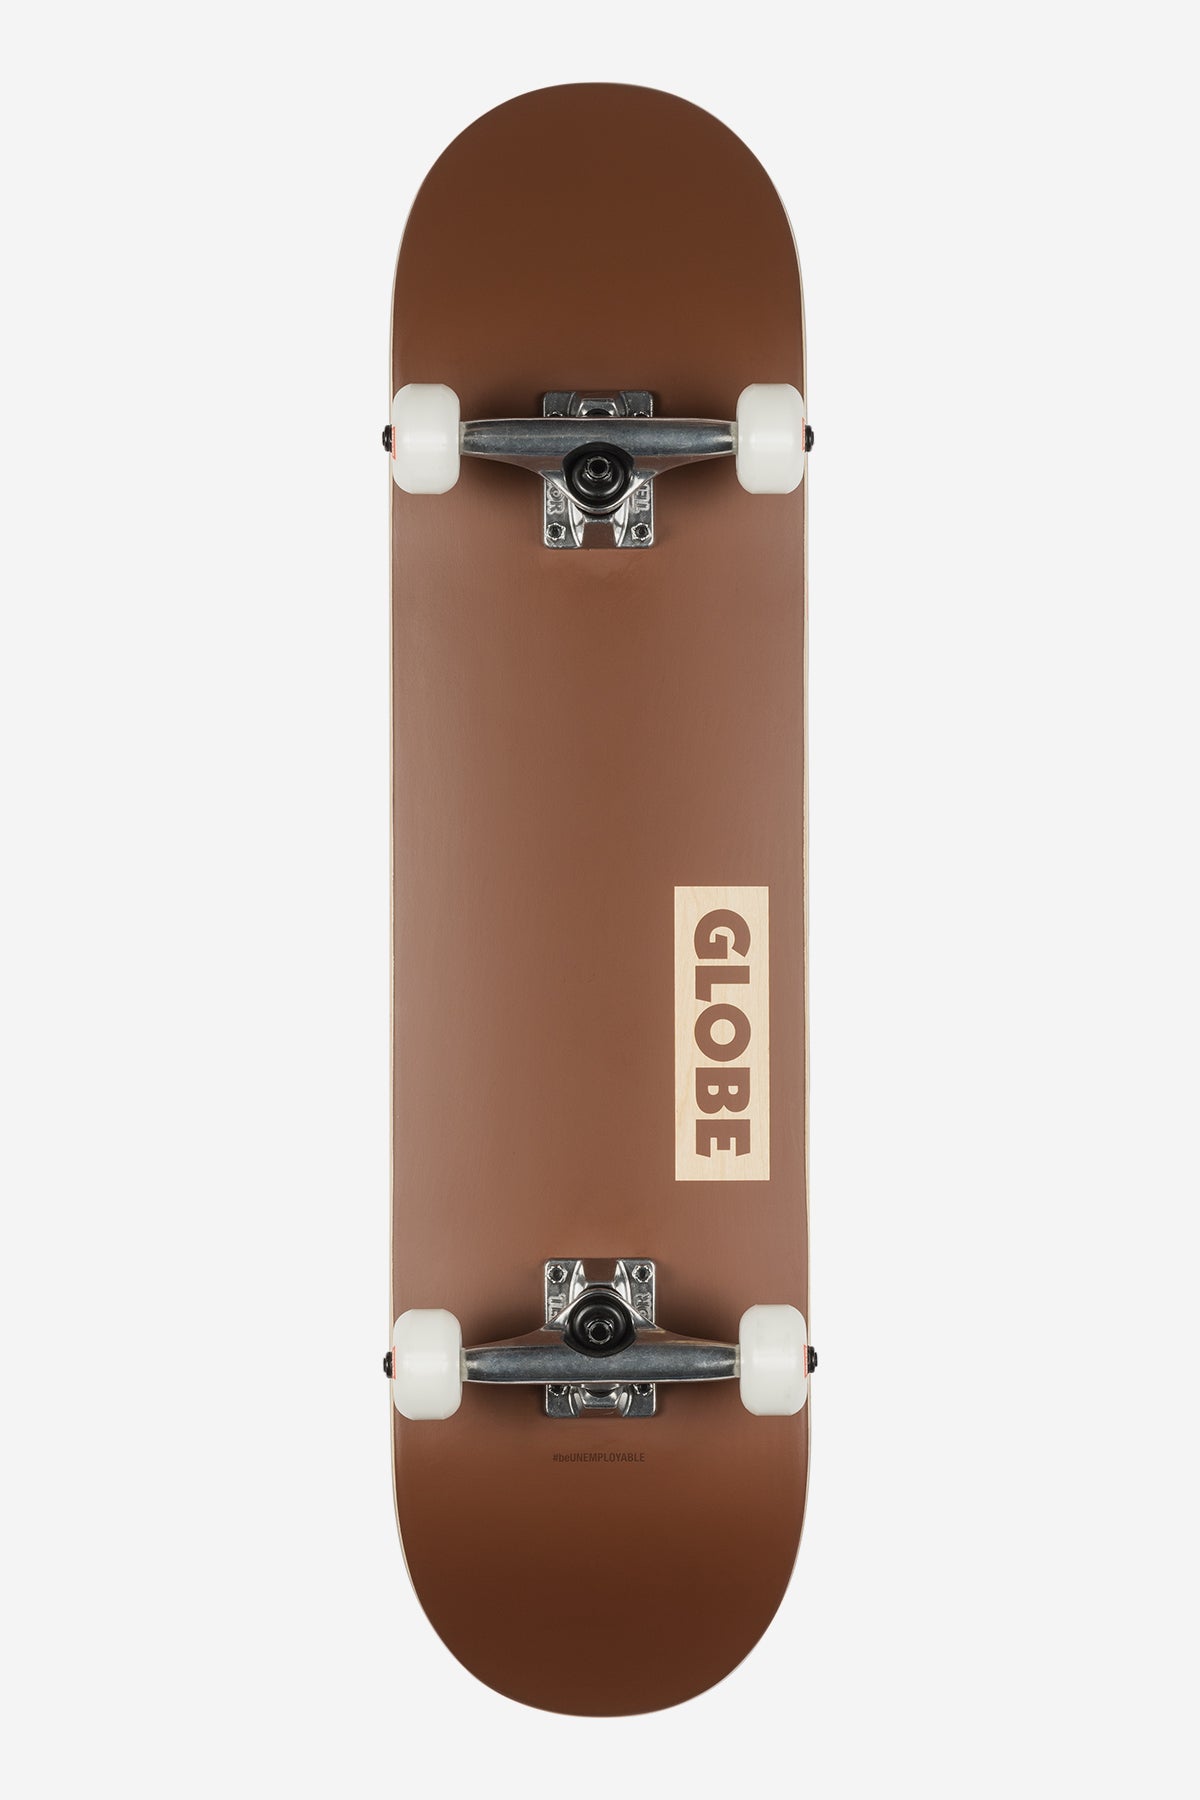 Globe - Goodstock - Clay - 8.5" complet Skateboard